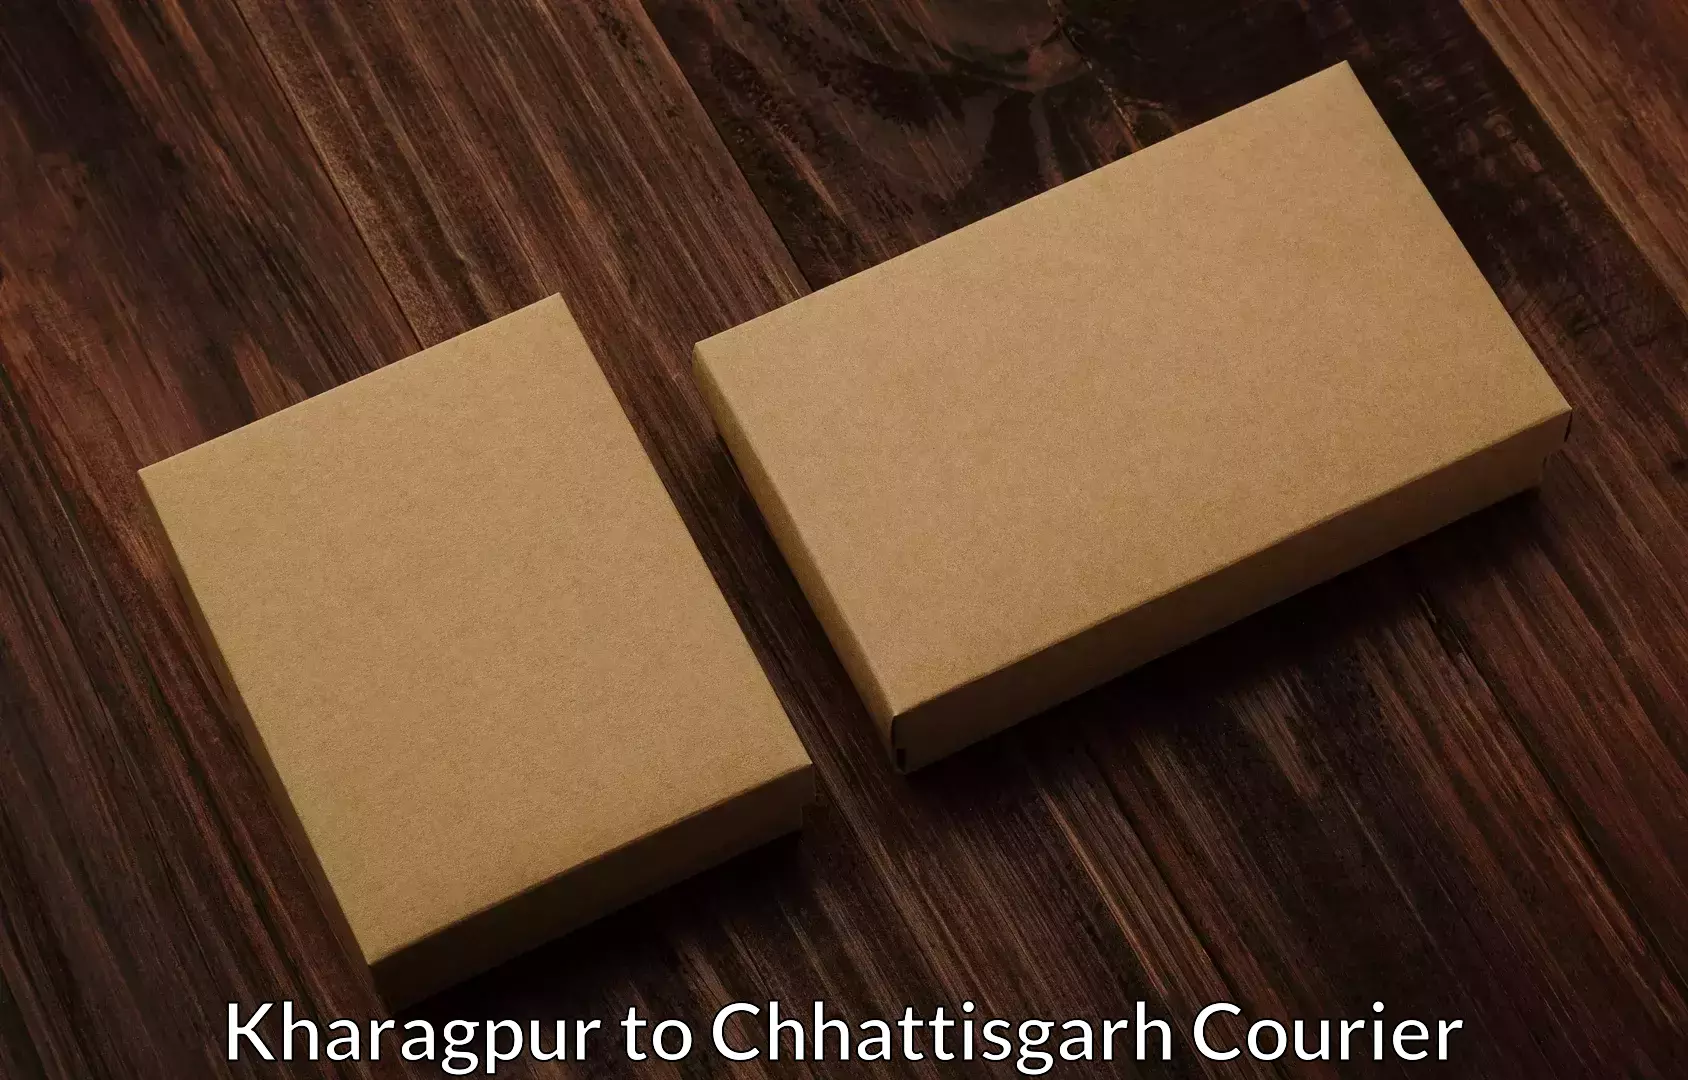 Professional home shifting Kharagpur to Bijapur Chhattisgarh